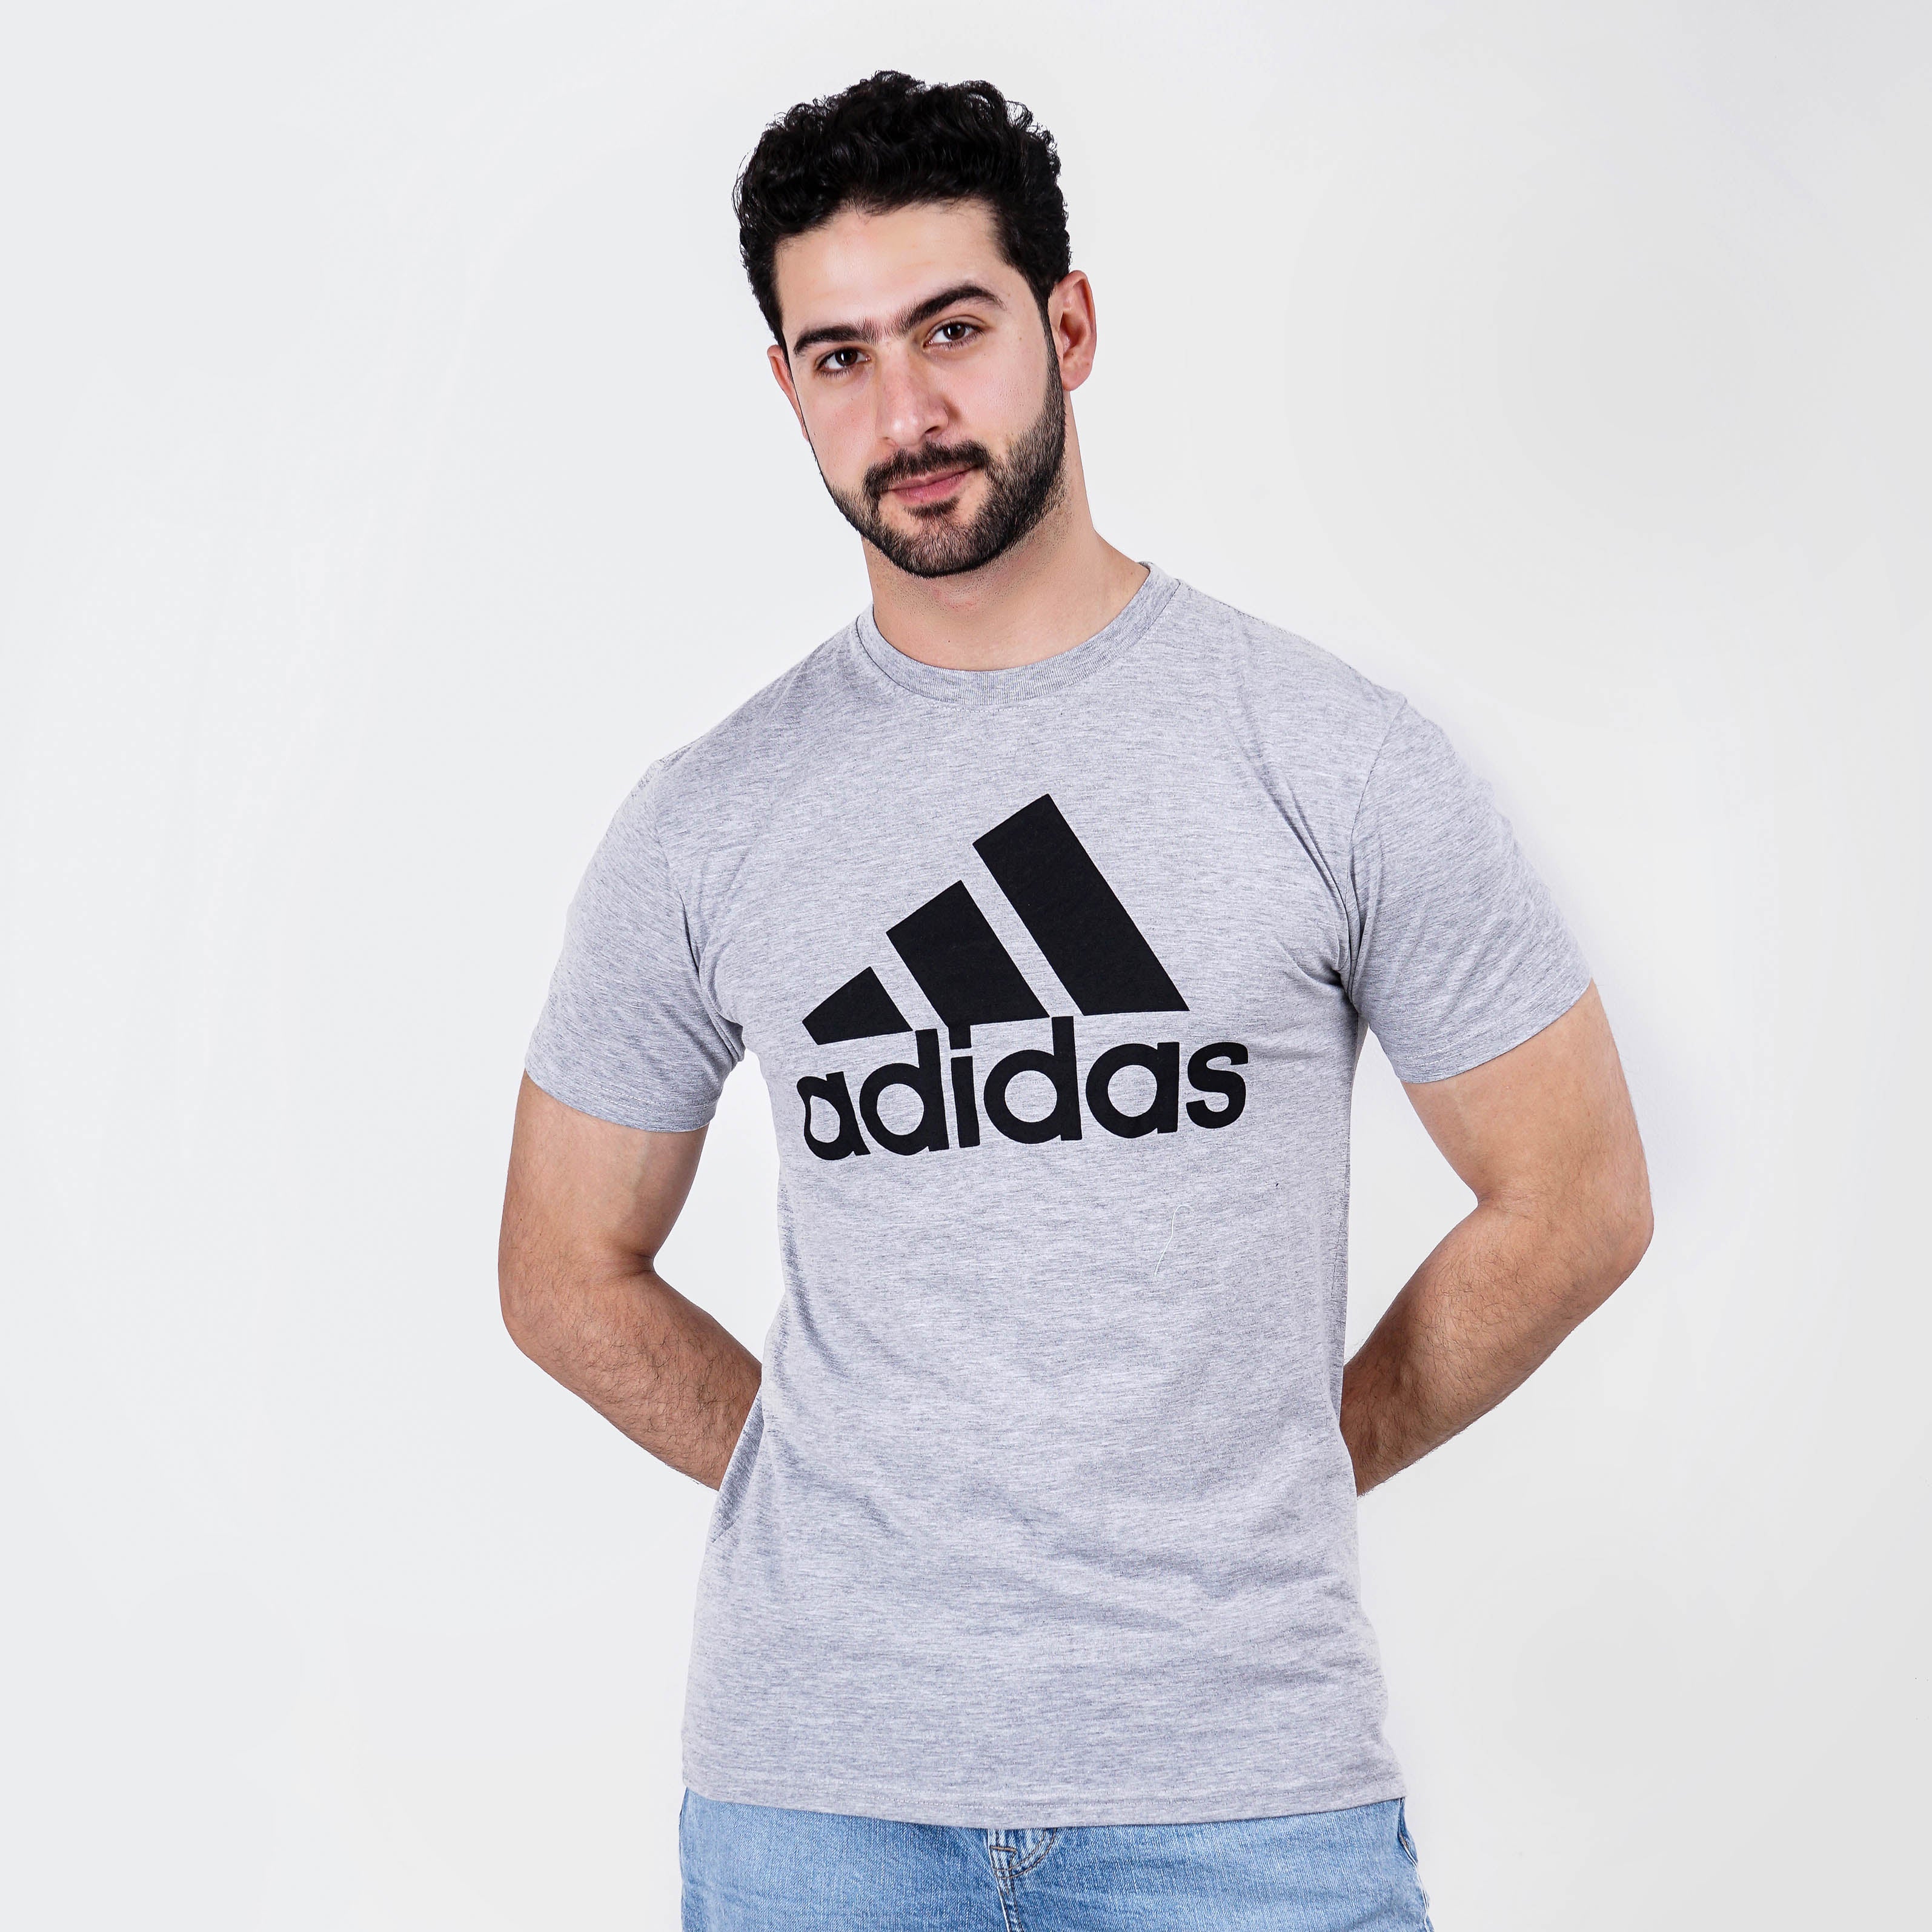 Original Adidas Light Grey T-Shirt - Marca Deals - Adidas